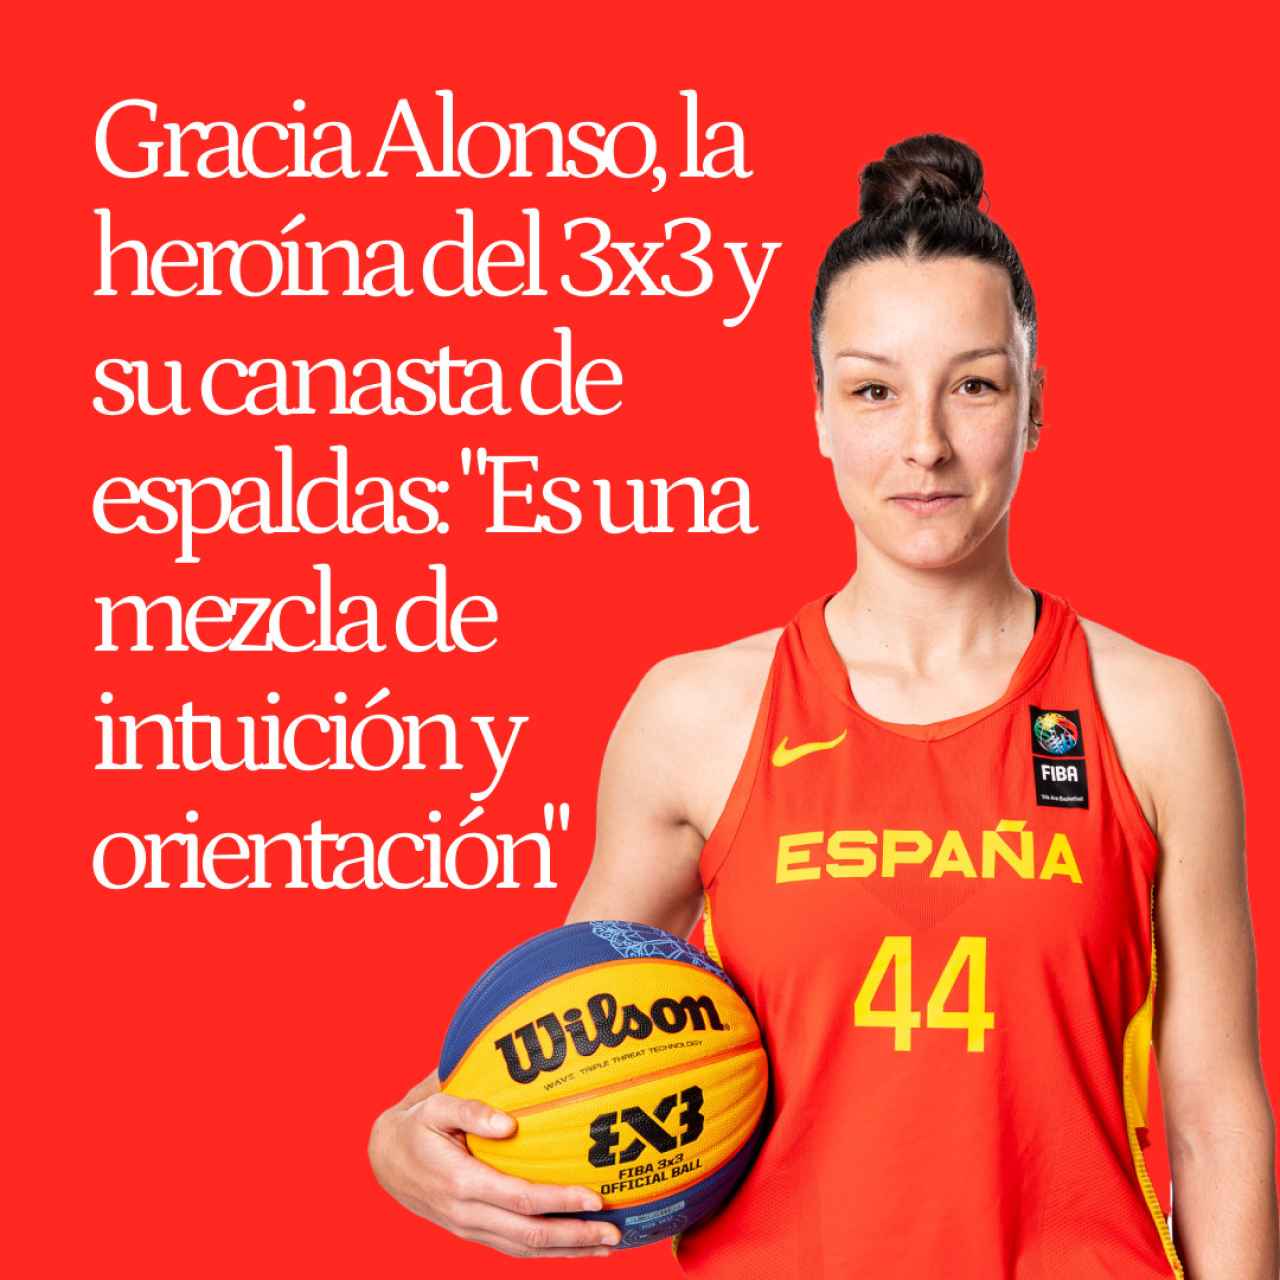 Gracia Alonso, la heroína del 3x3 y su canasta de espaldas: "Es una mezcla de intuición y orientación"